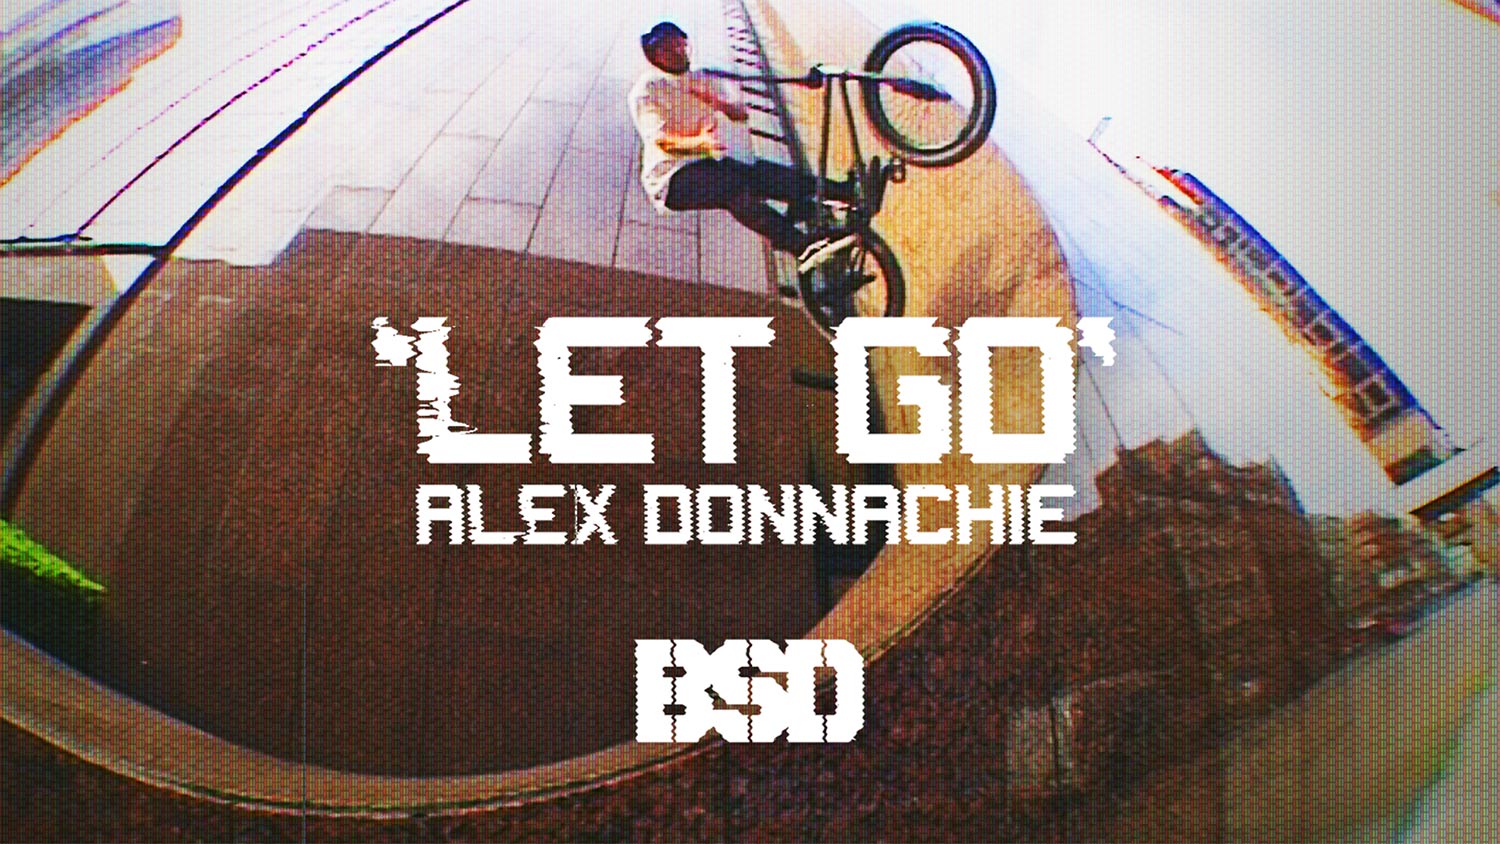 Alex Donnachie 'Let Go' video